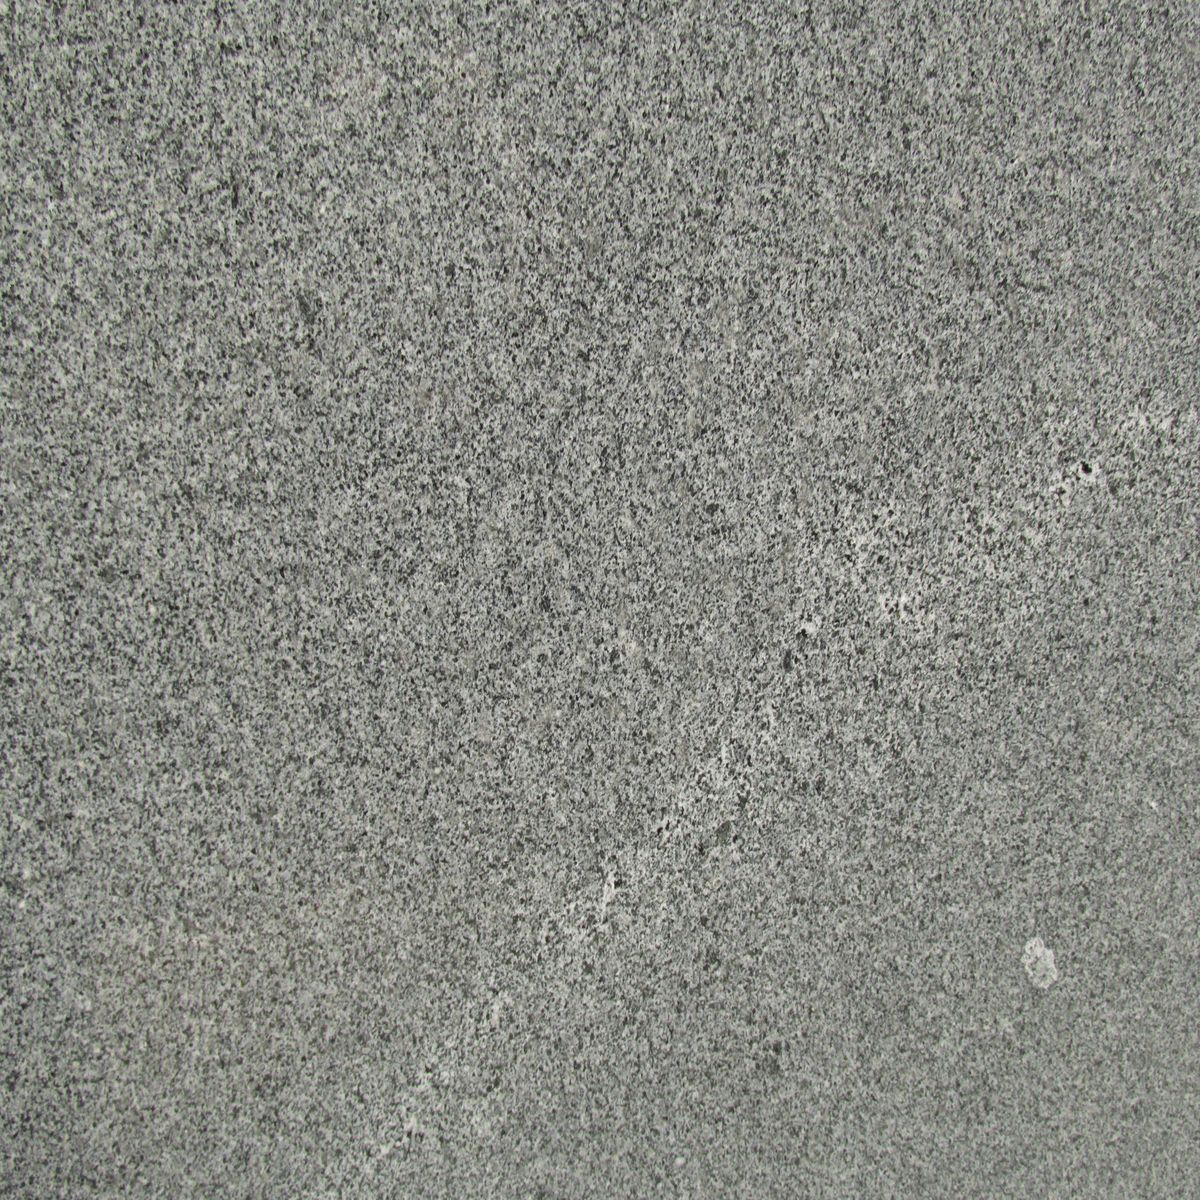 diorite granit